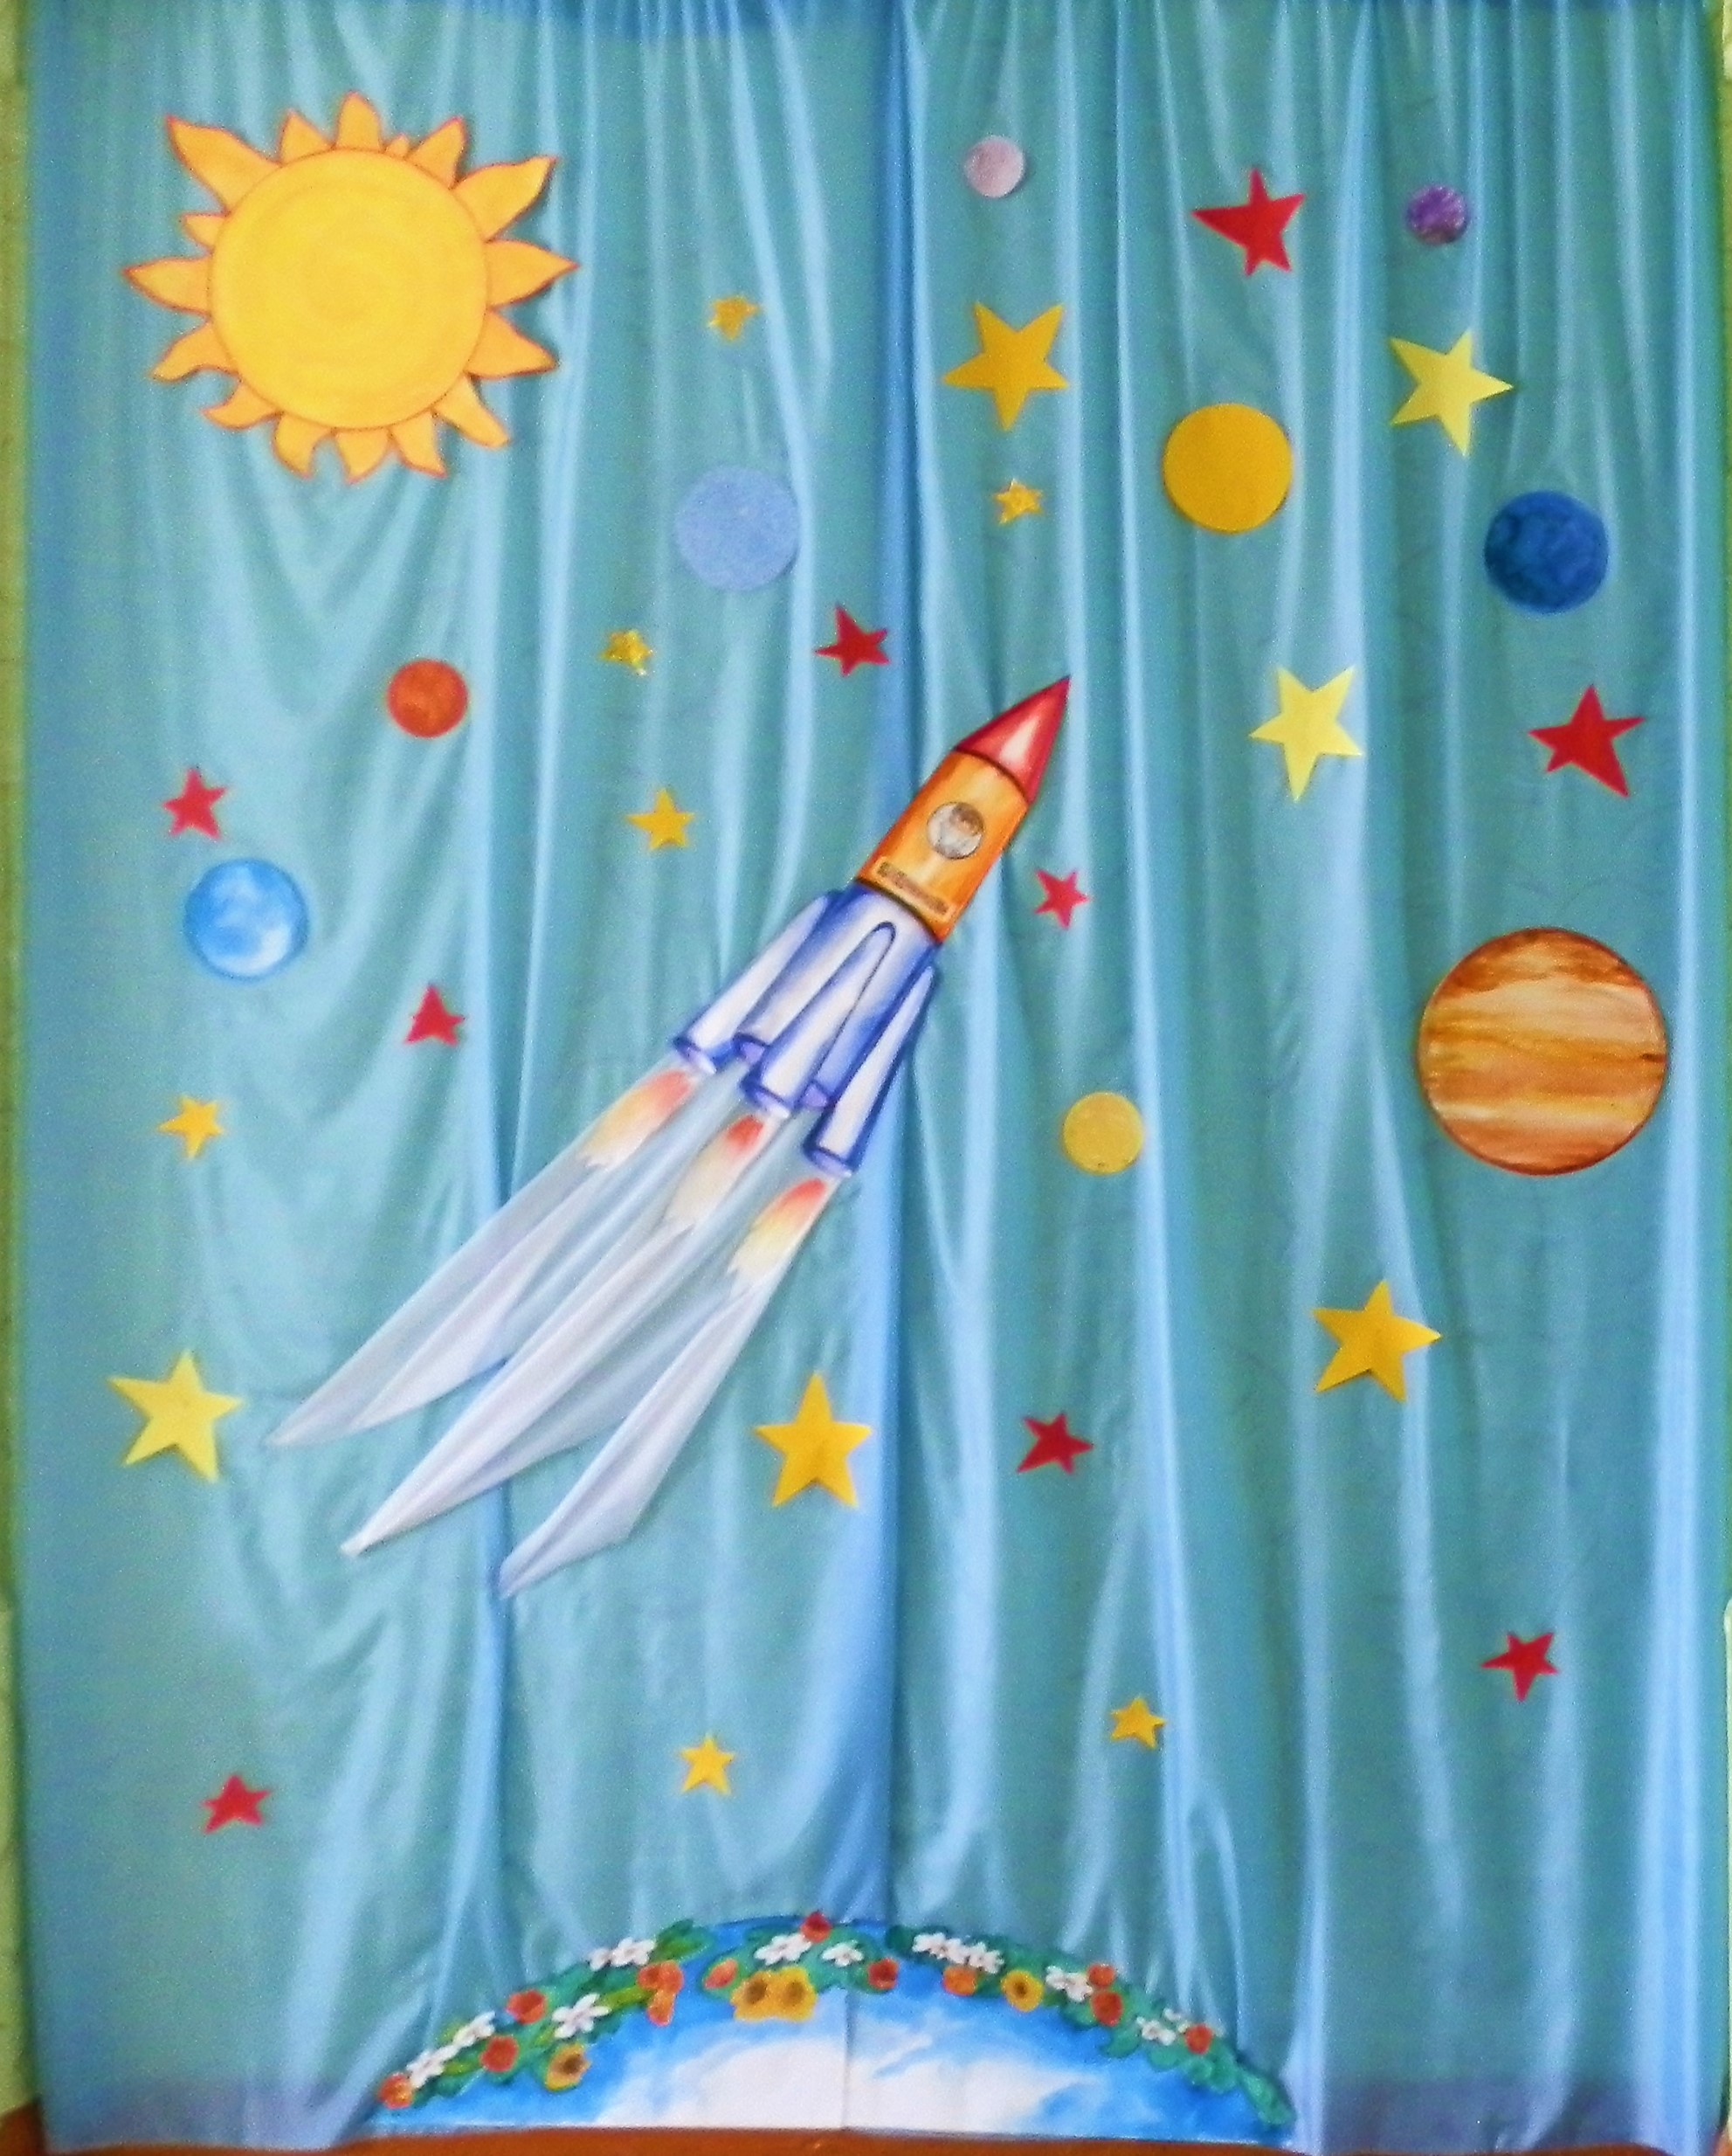 Украшение зала ко Дню космонавтики в детском саду. Украсить зал ко Дню космонавтики в детском. Украсить зал ко Дню космонавтики в детском саду. Оформление зала ко Дню космонавтики в детском саду.